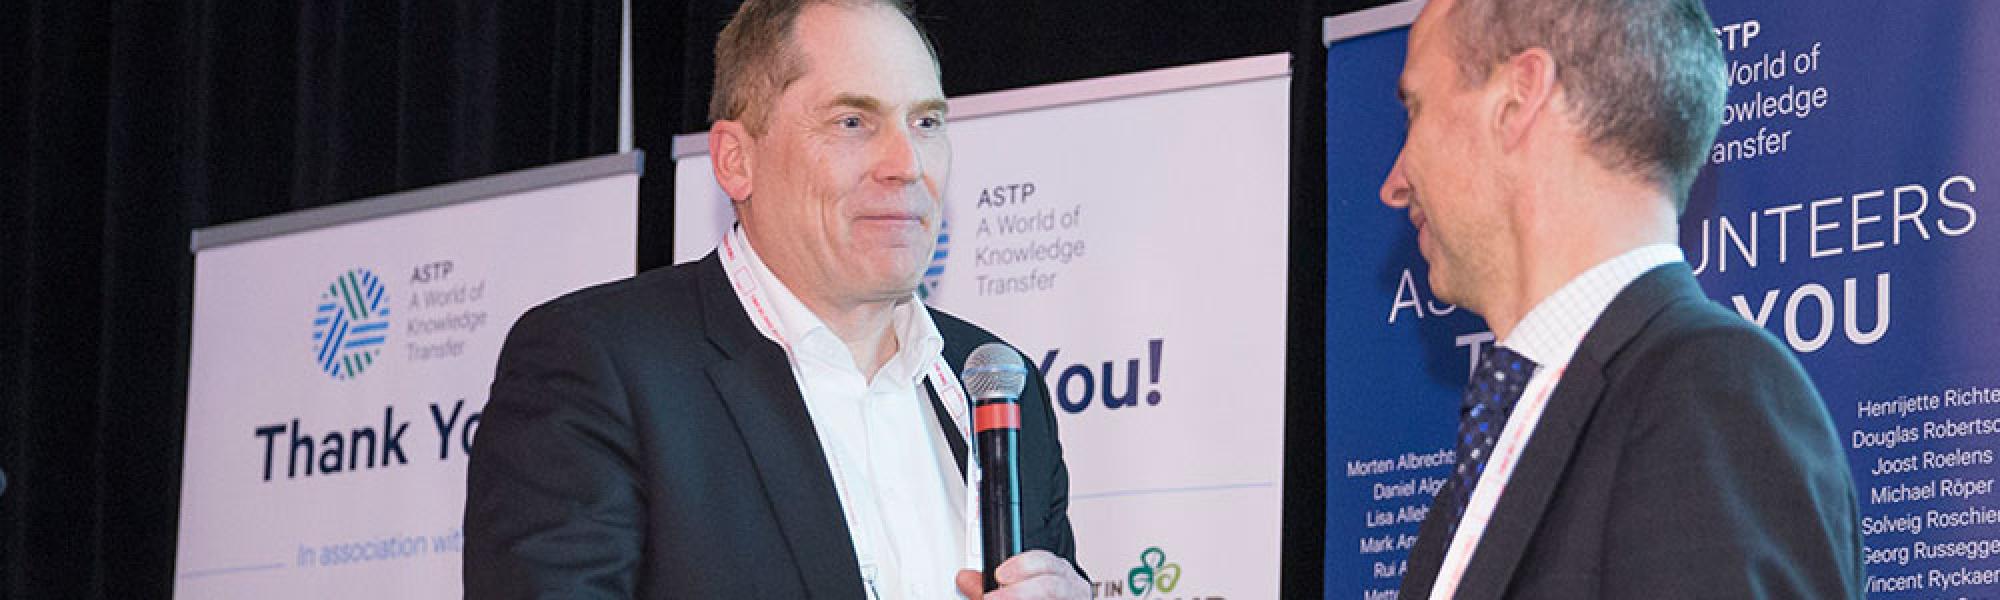 ASTP - ASTP Welcomes a New President: Martin Raditsch